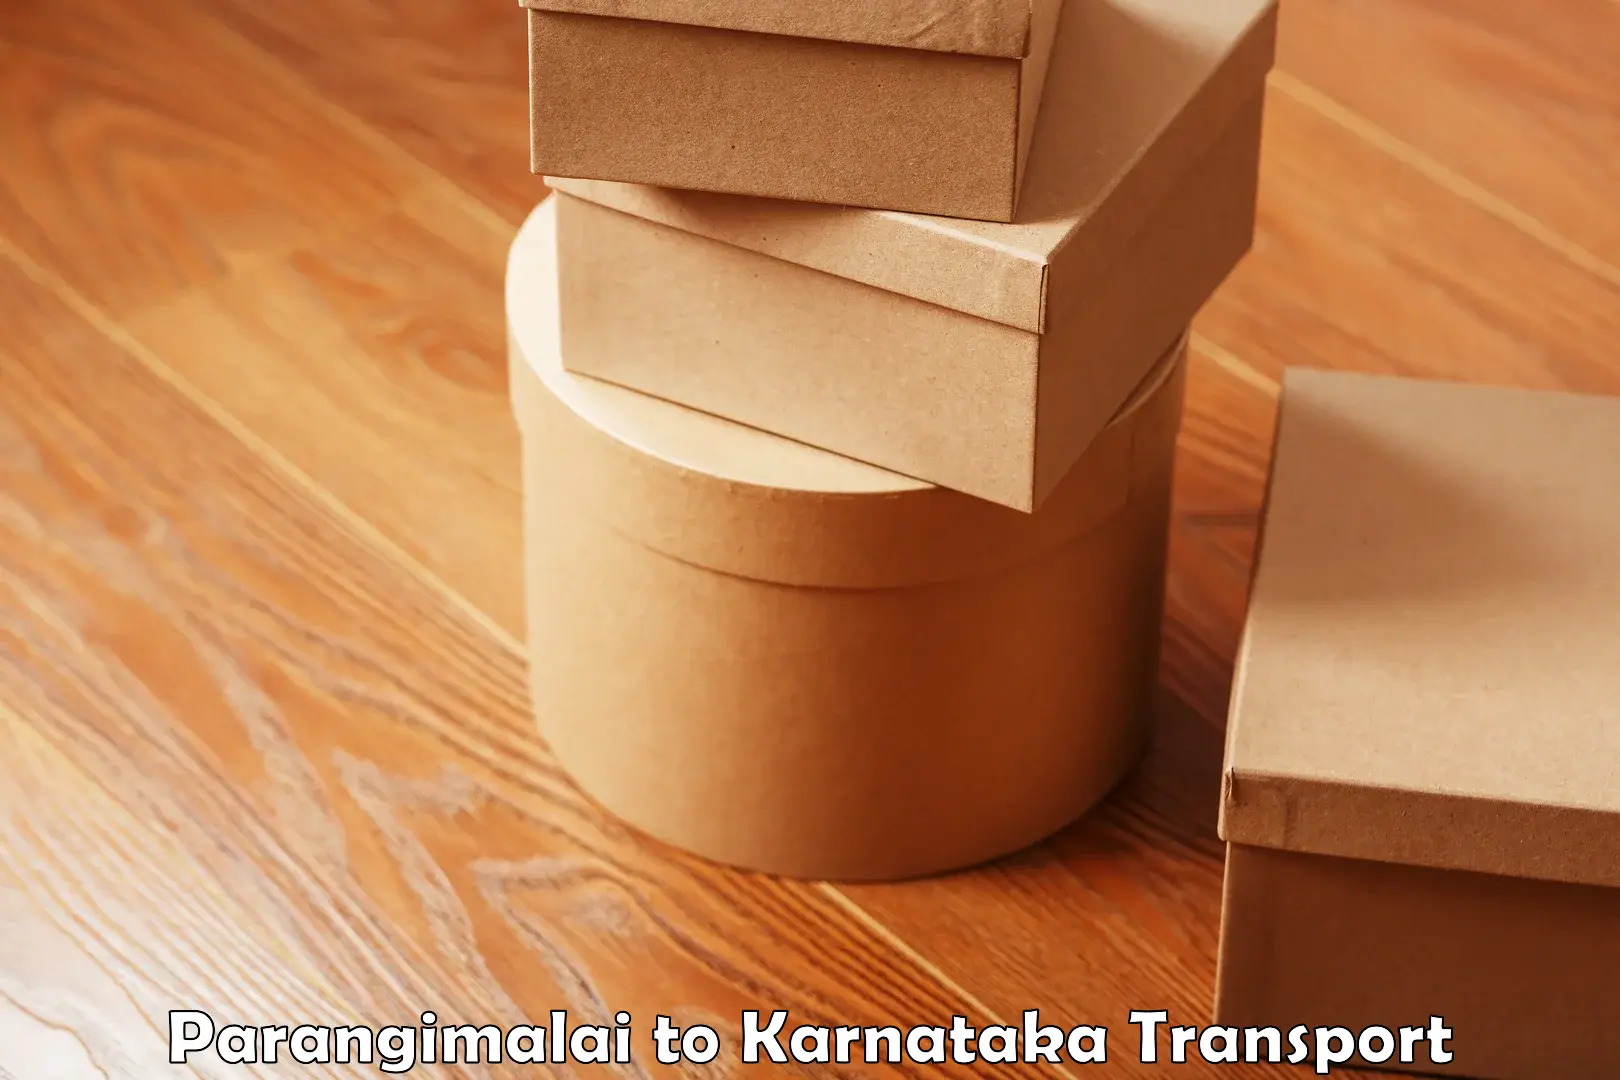 Logistics transportation services Parangimalai to Gurmatkal